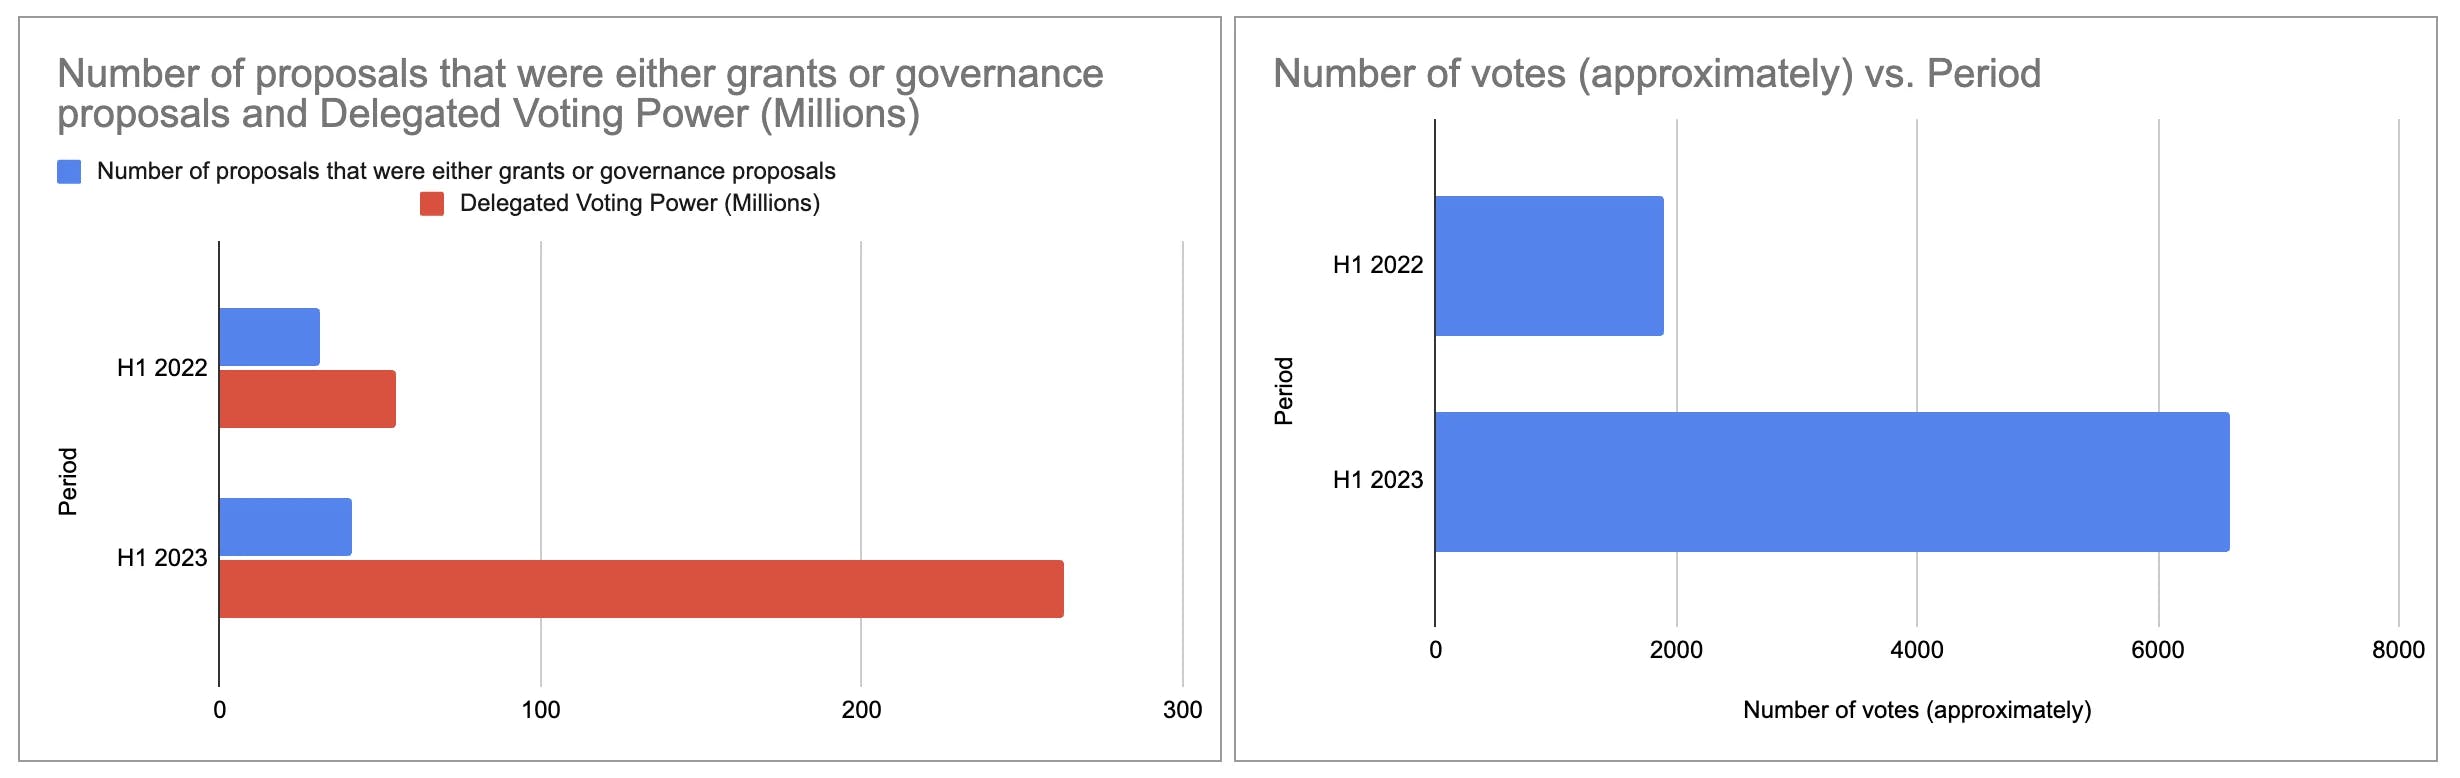 比较 2022 年上半年和 2023 年上半年之间通过赠款和治理提案收集的投票权和选票。